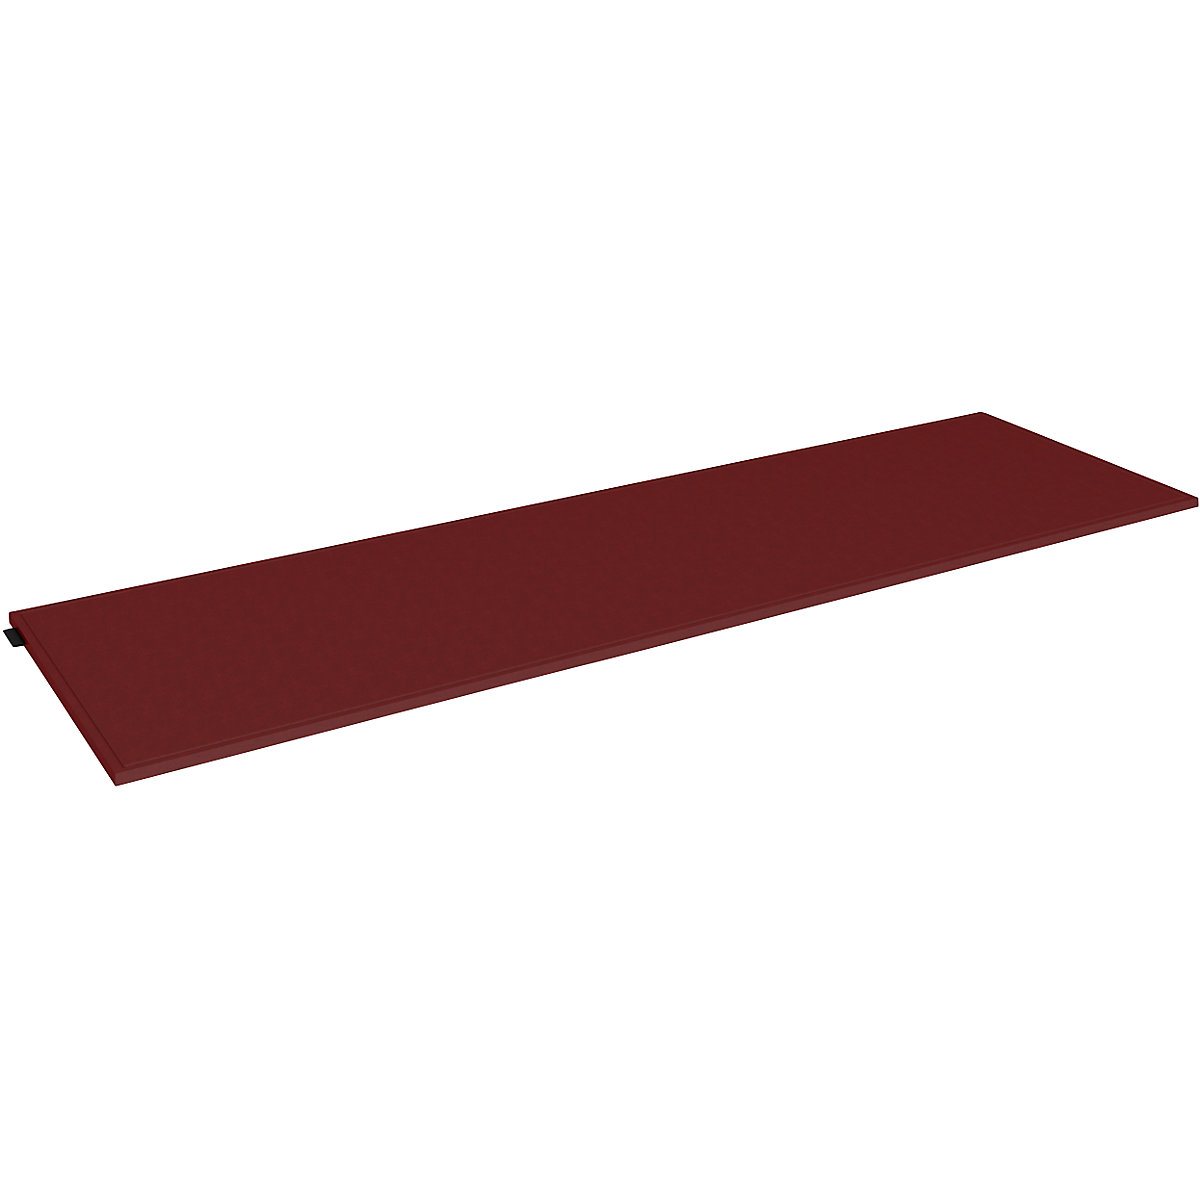 Almofada em feltro para caixa individual – mauser, largura 1147 mm, vermelho-3